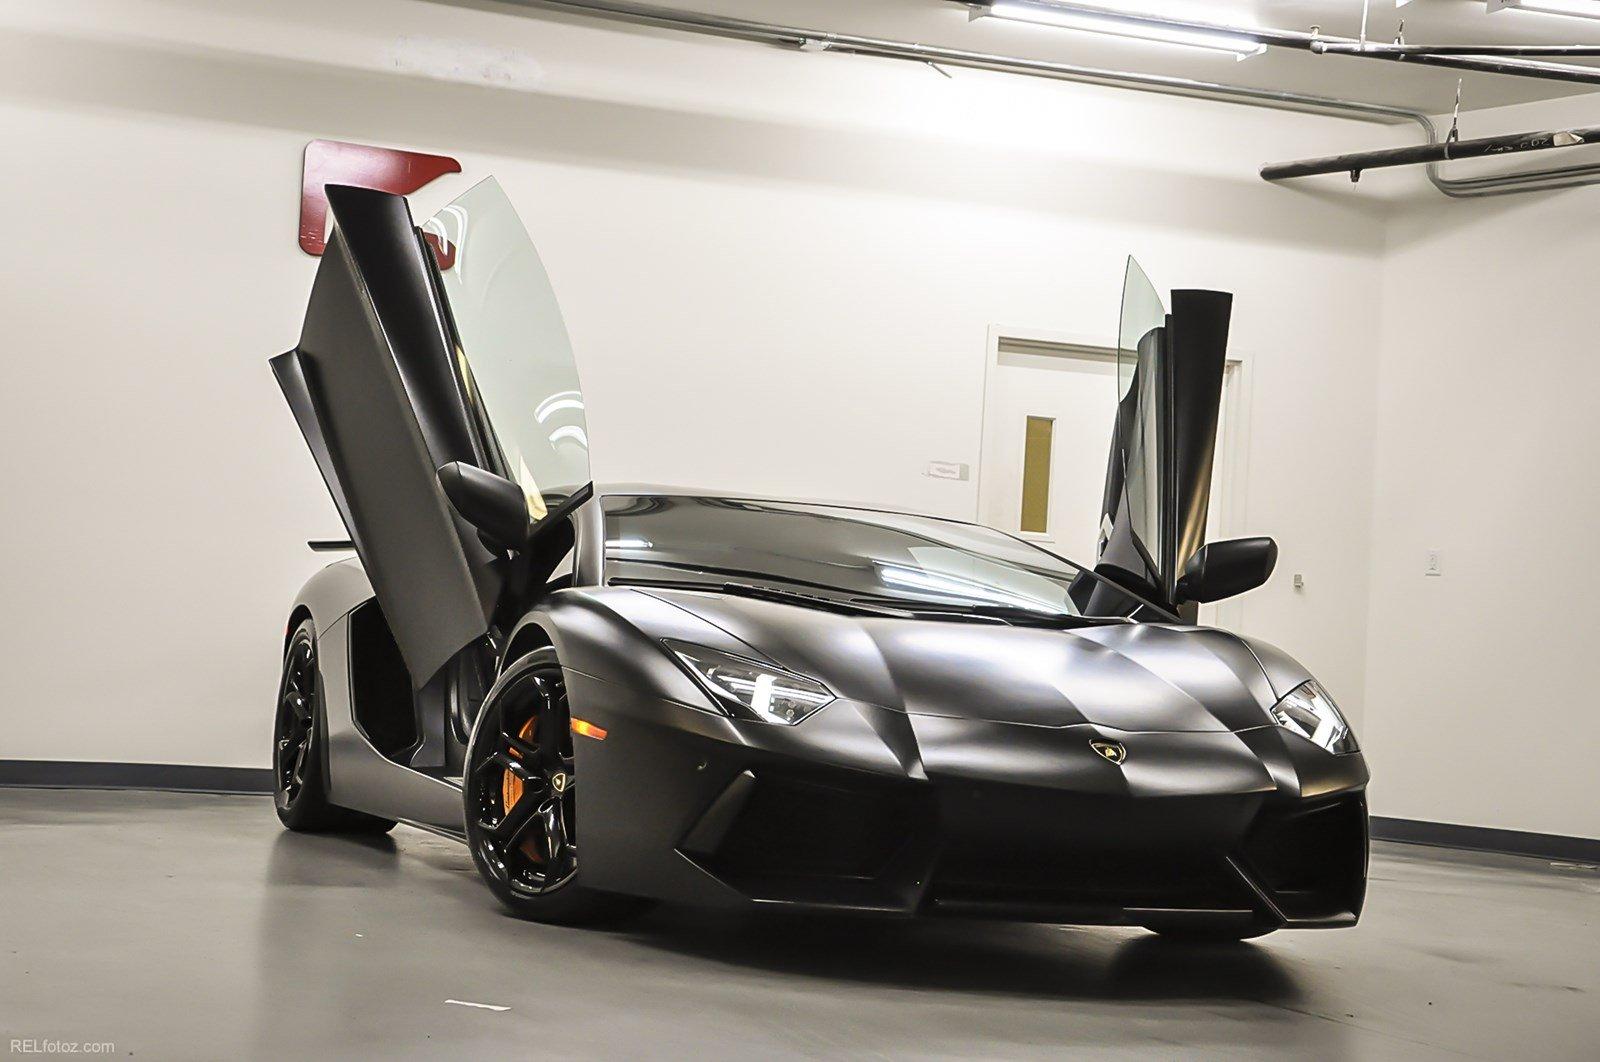 Used 2012 Lamborghini Aventador for sale Sold at Gravity Autos Marietta in Marietta GA 30060 2